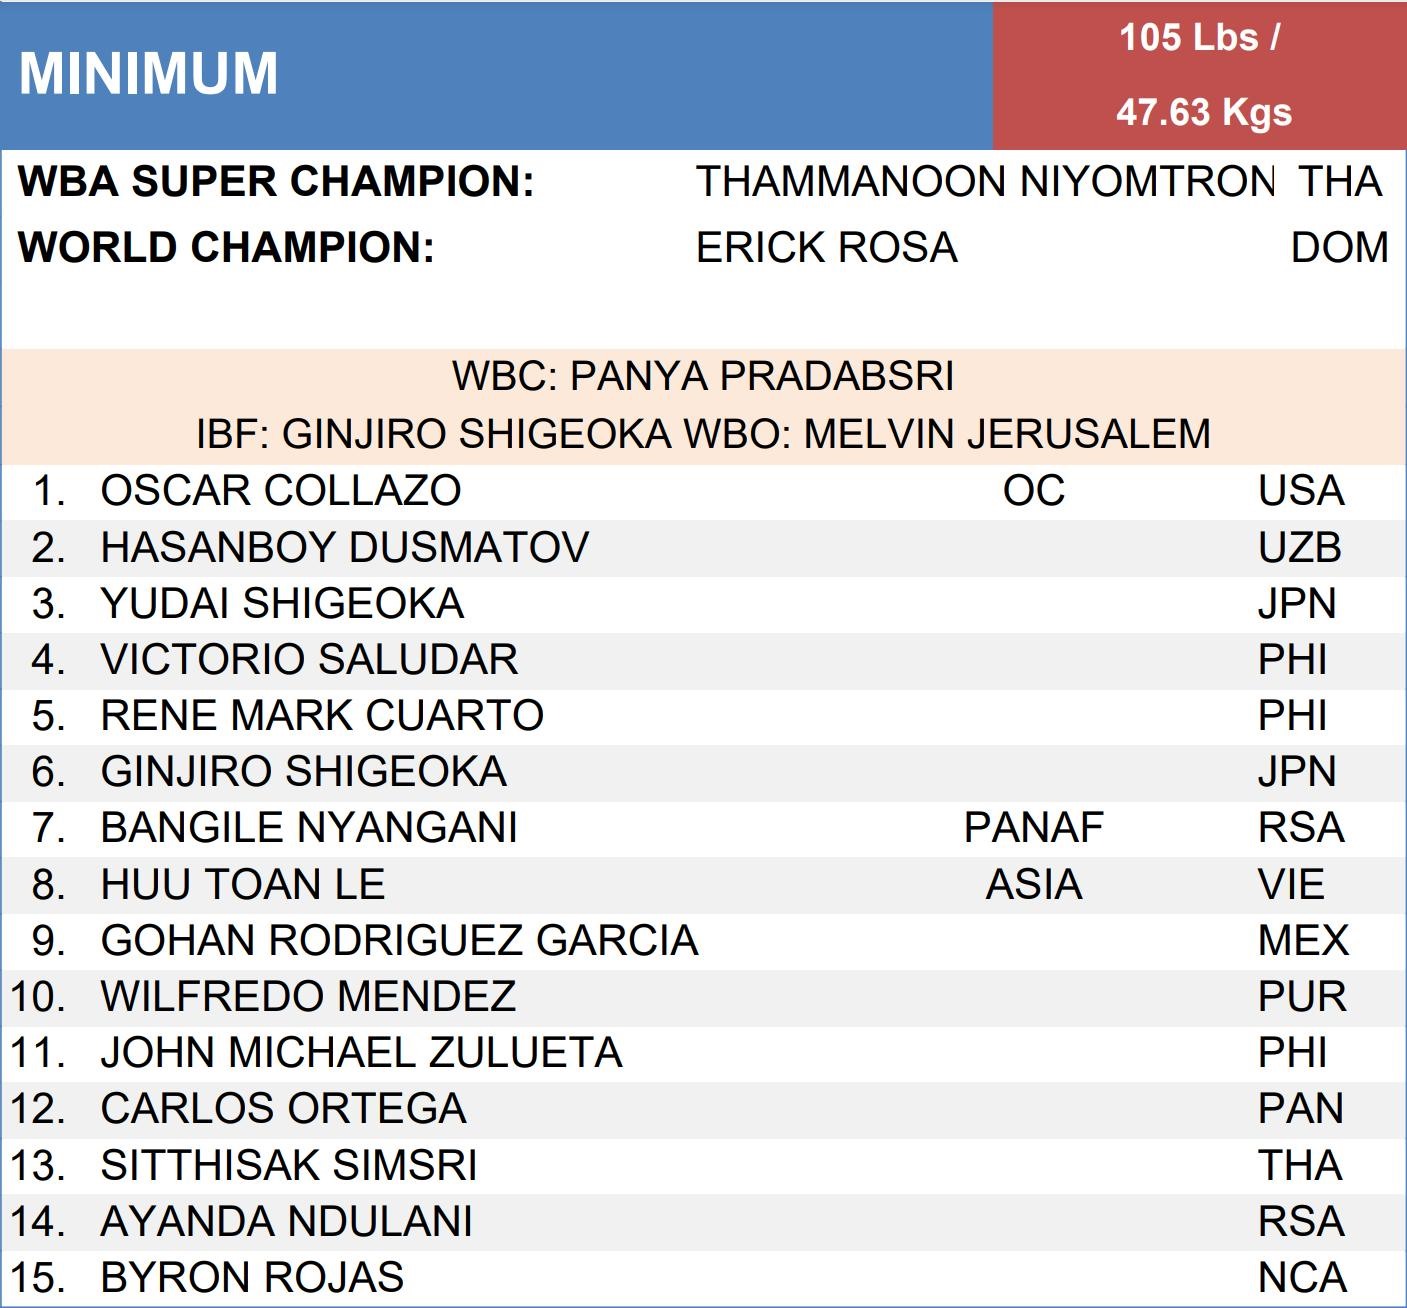 Lê Hữu Toàn vươn lên hạng 8 trên bảng xếp hạng của WBA ở hạng Minimum. Ảnh: CMH